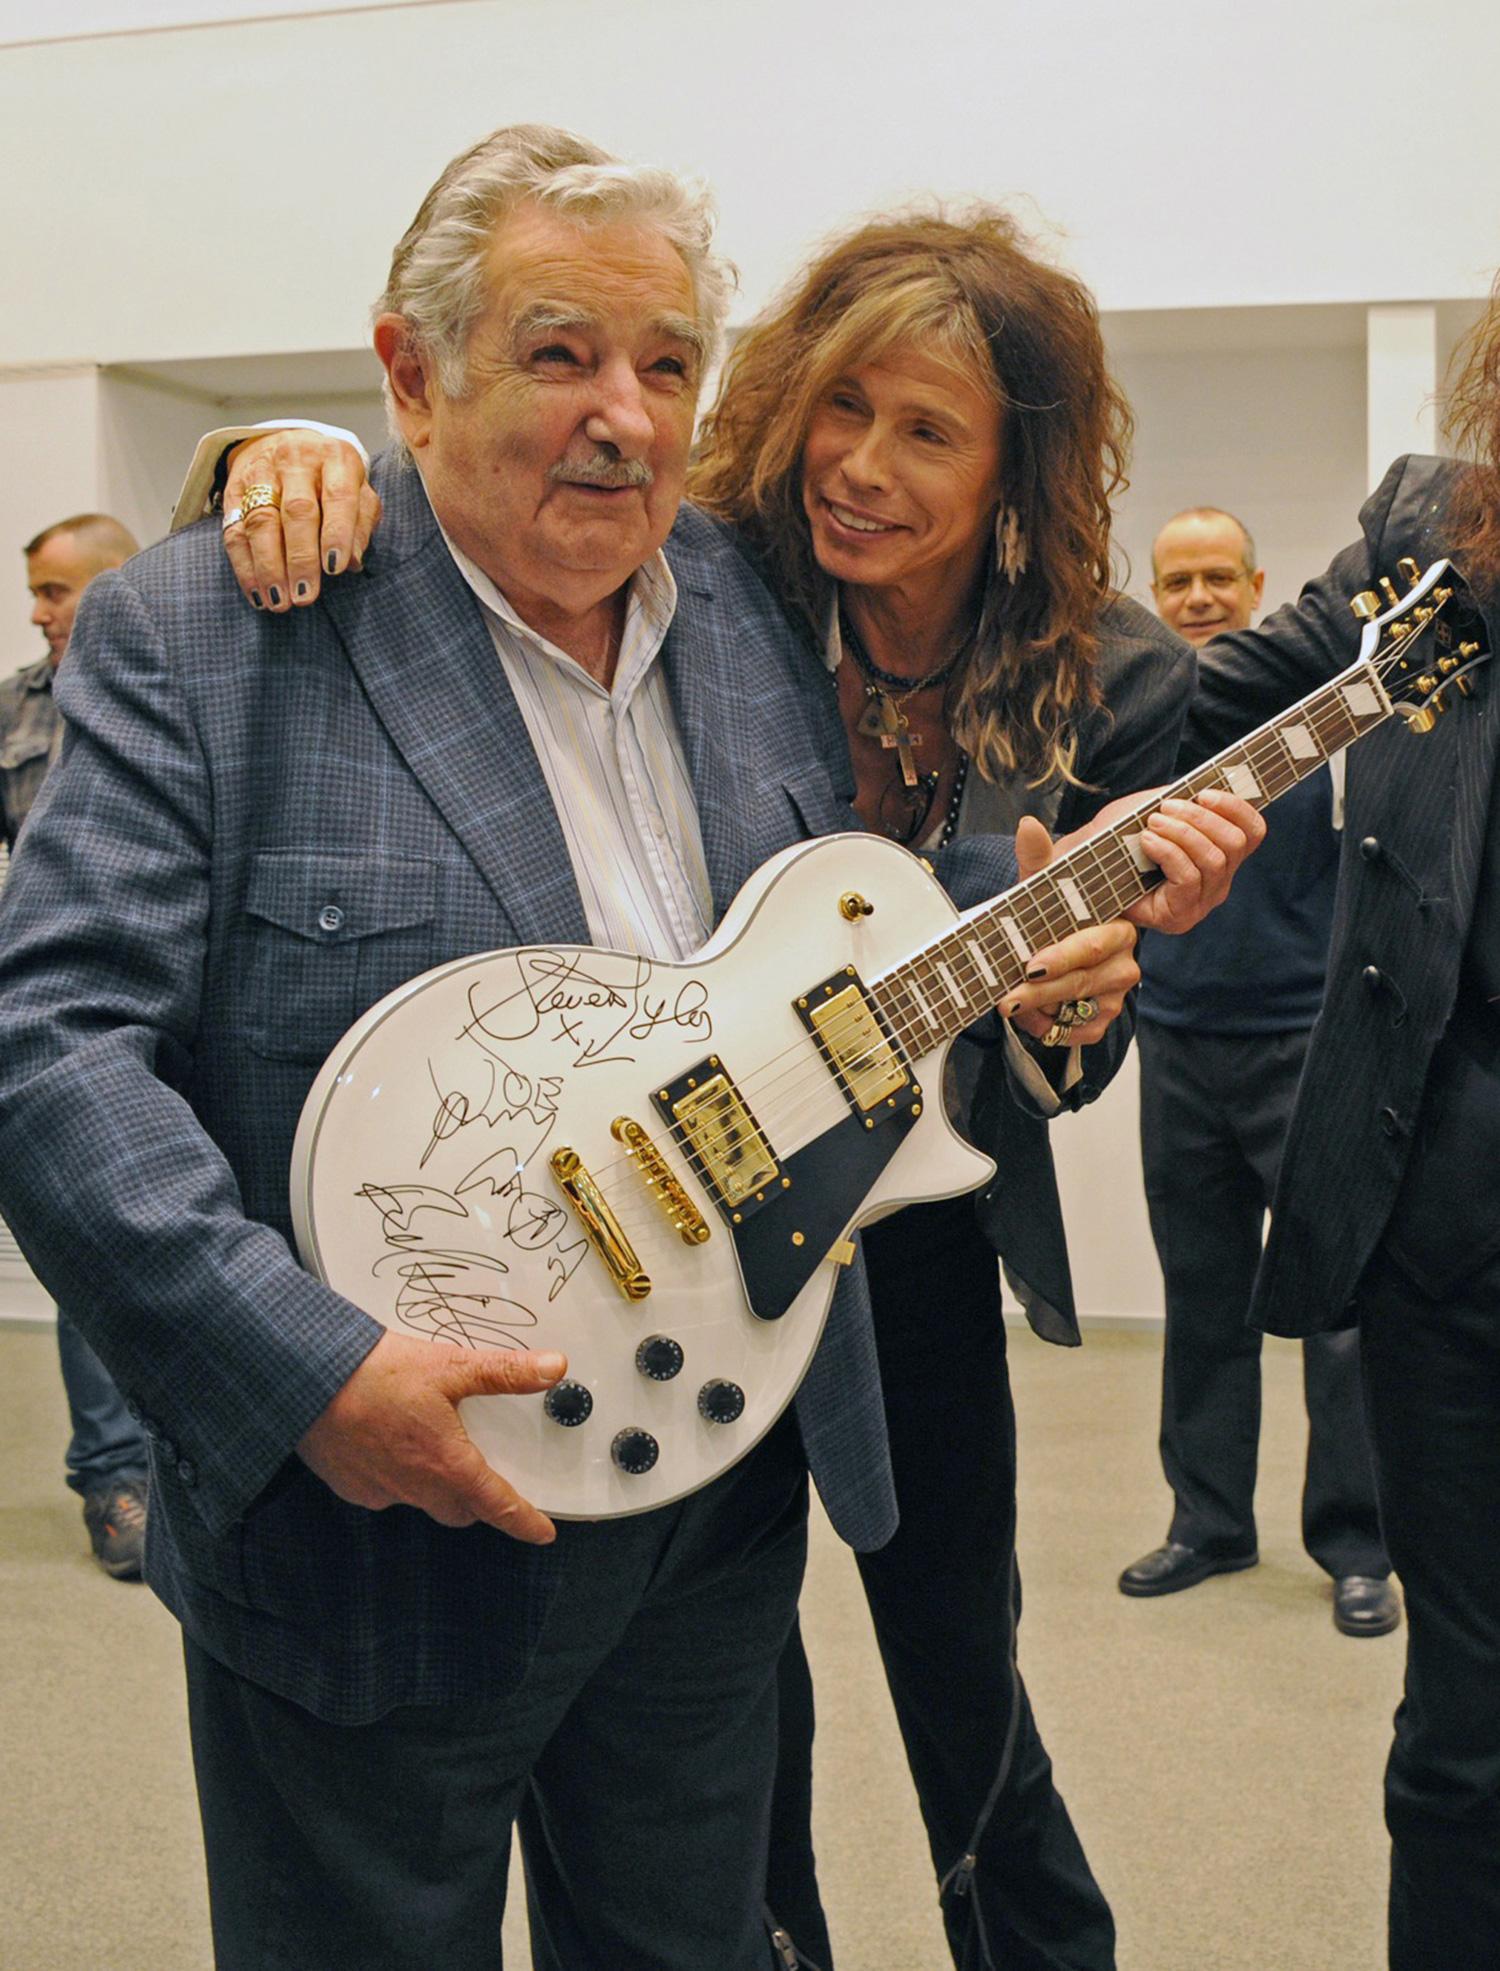 Här syns Jose Mujica tillsammans med Aerosmiths Steven Tyler.